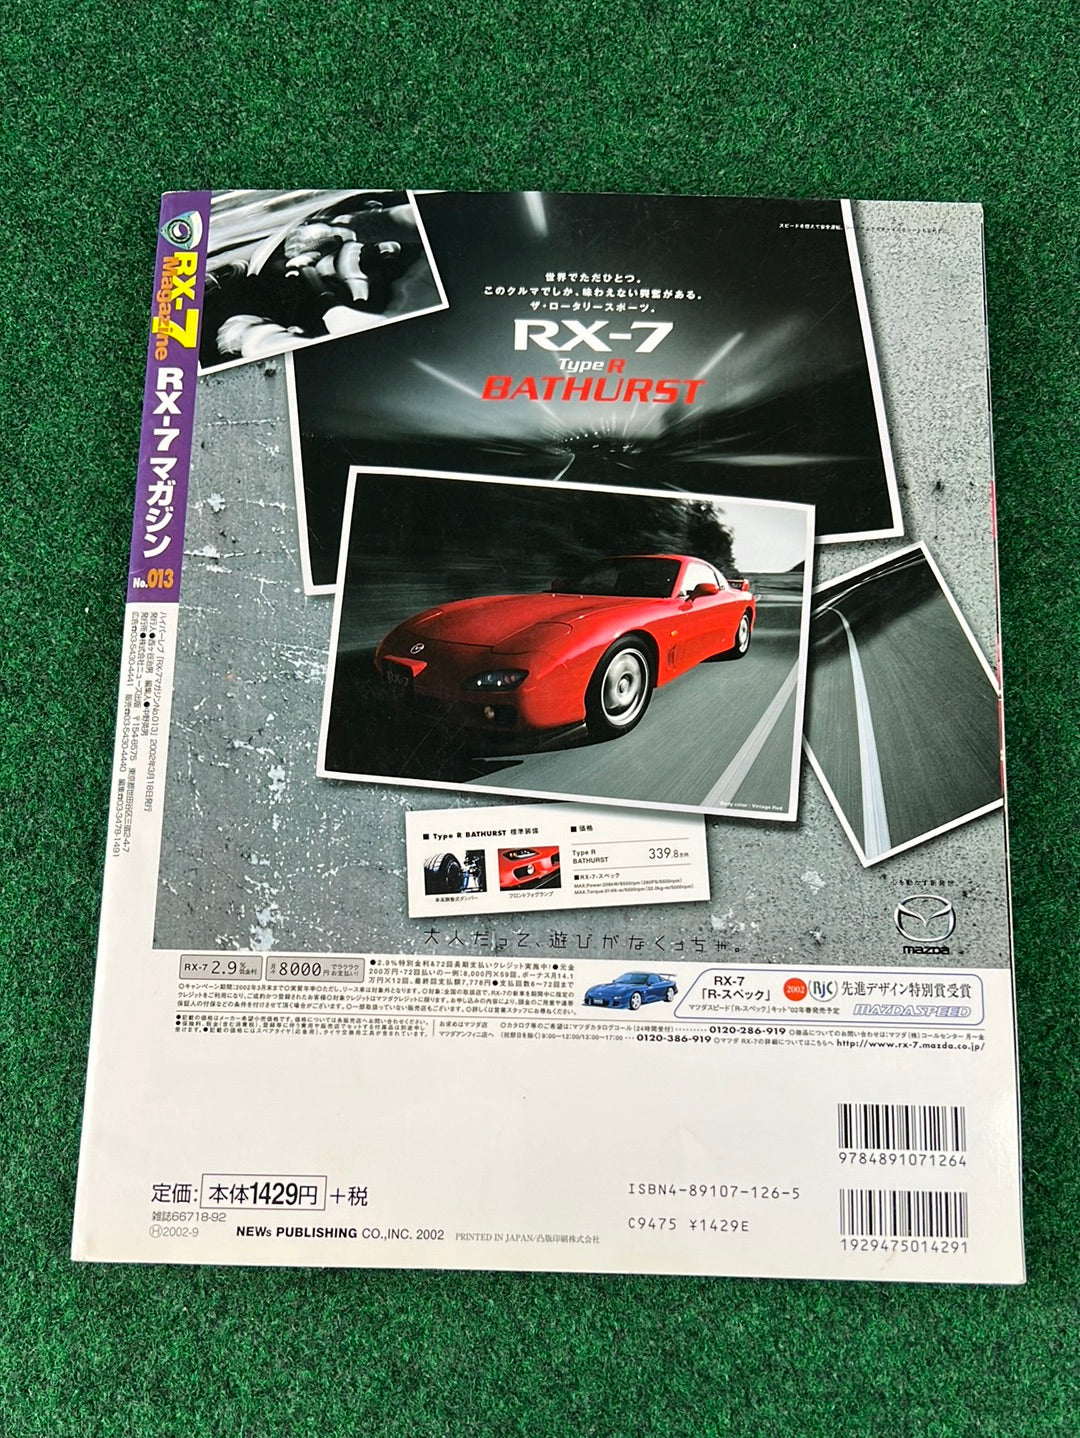 RX7 Magazine - No. 011 through No. 015